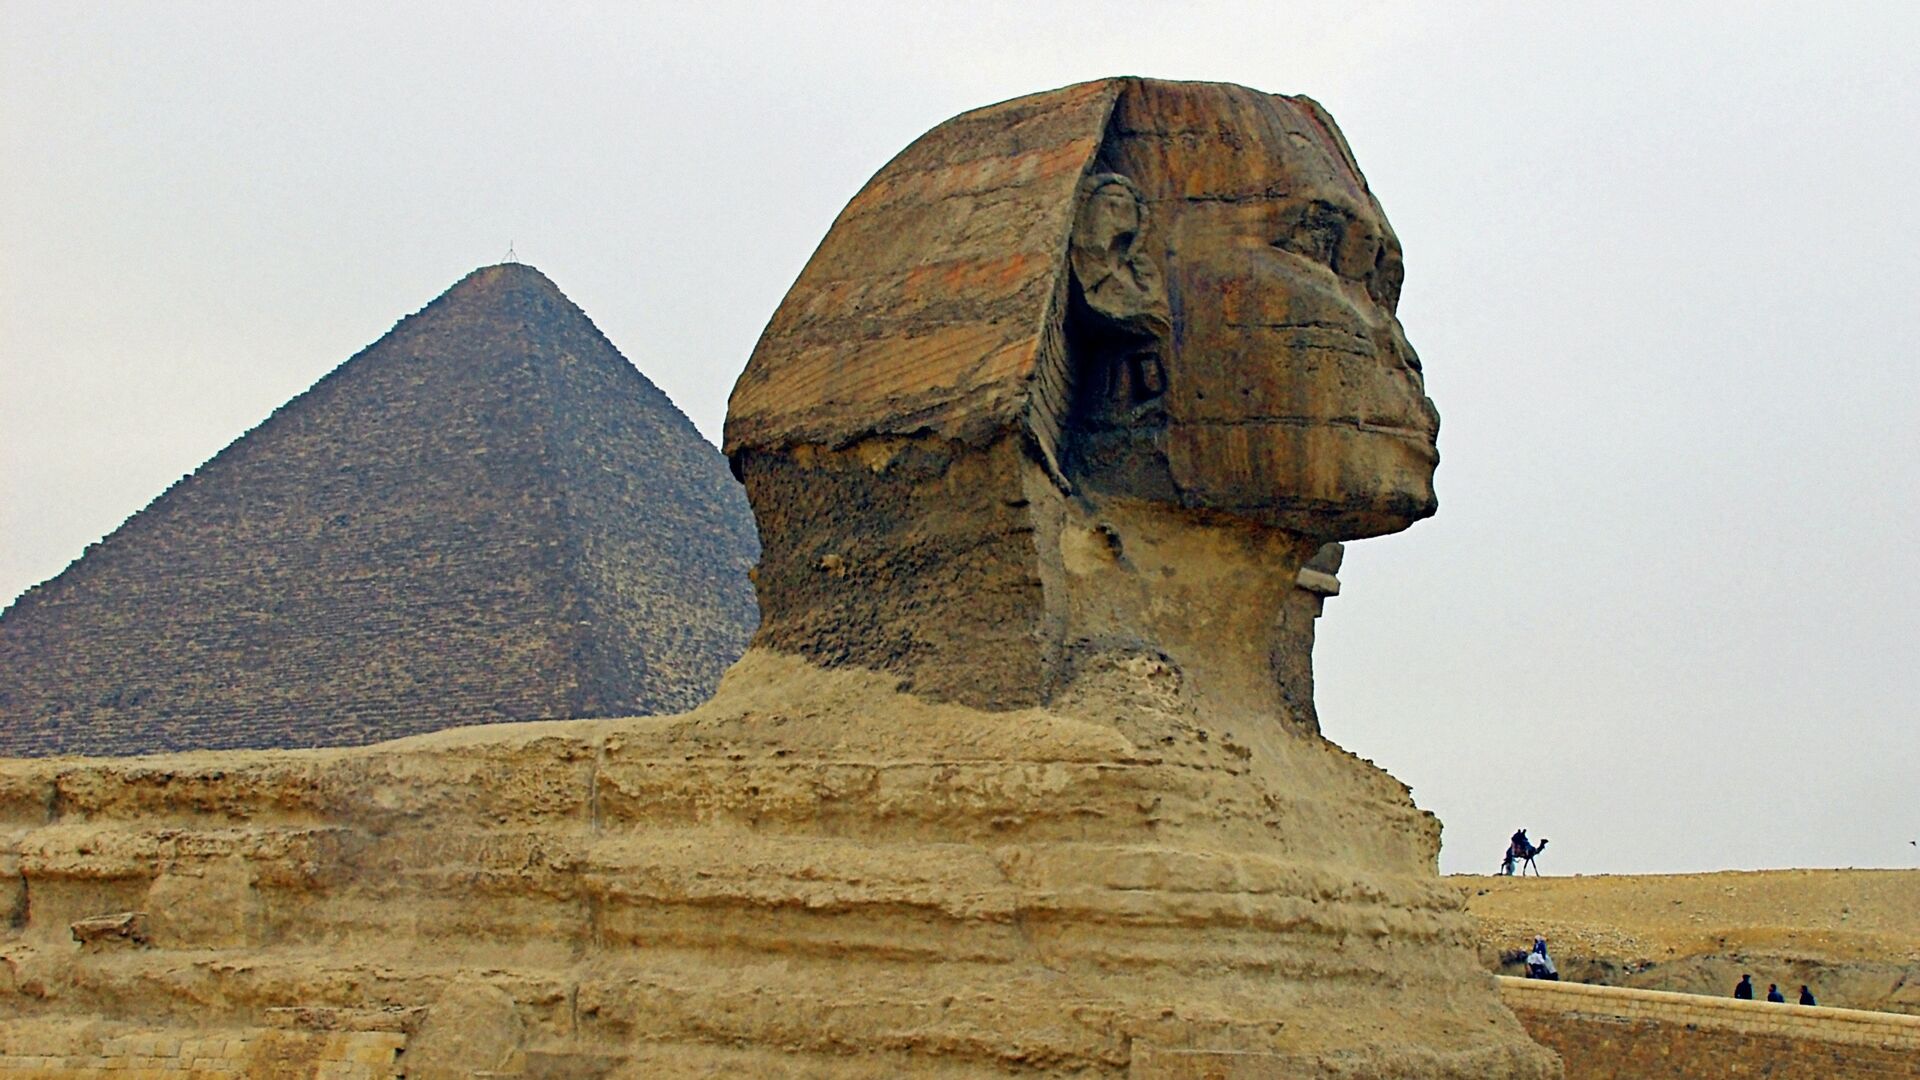 Большой сфинкс в Египте — вечный страж пирамид Гизы